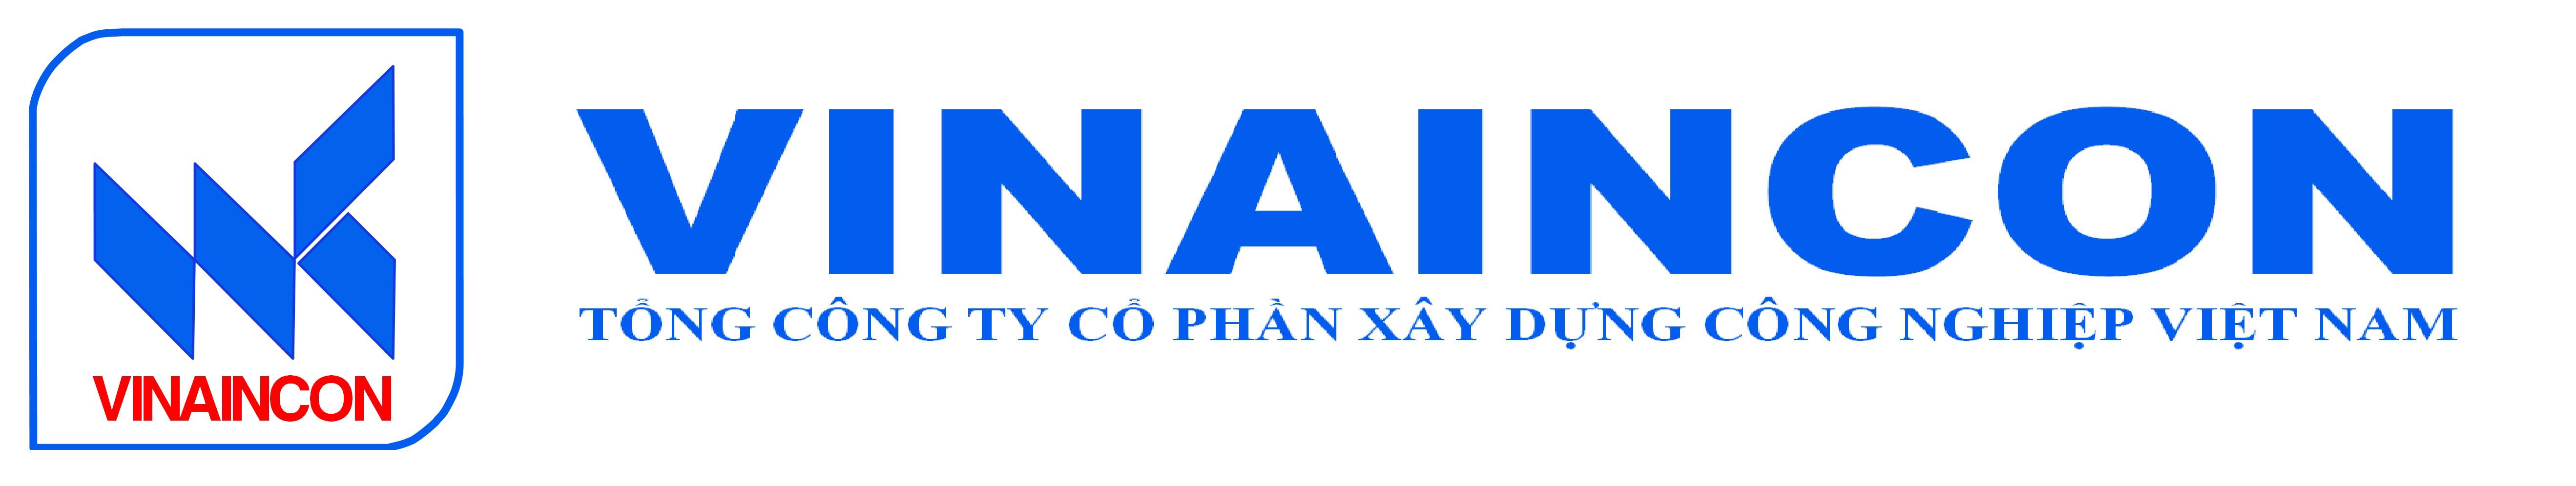 Chi Nhánh Miền Nam - Tổng Công Ty Cổ Phần Xây Dựng Công Nghiệp Việt Nam